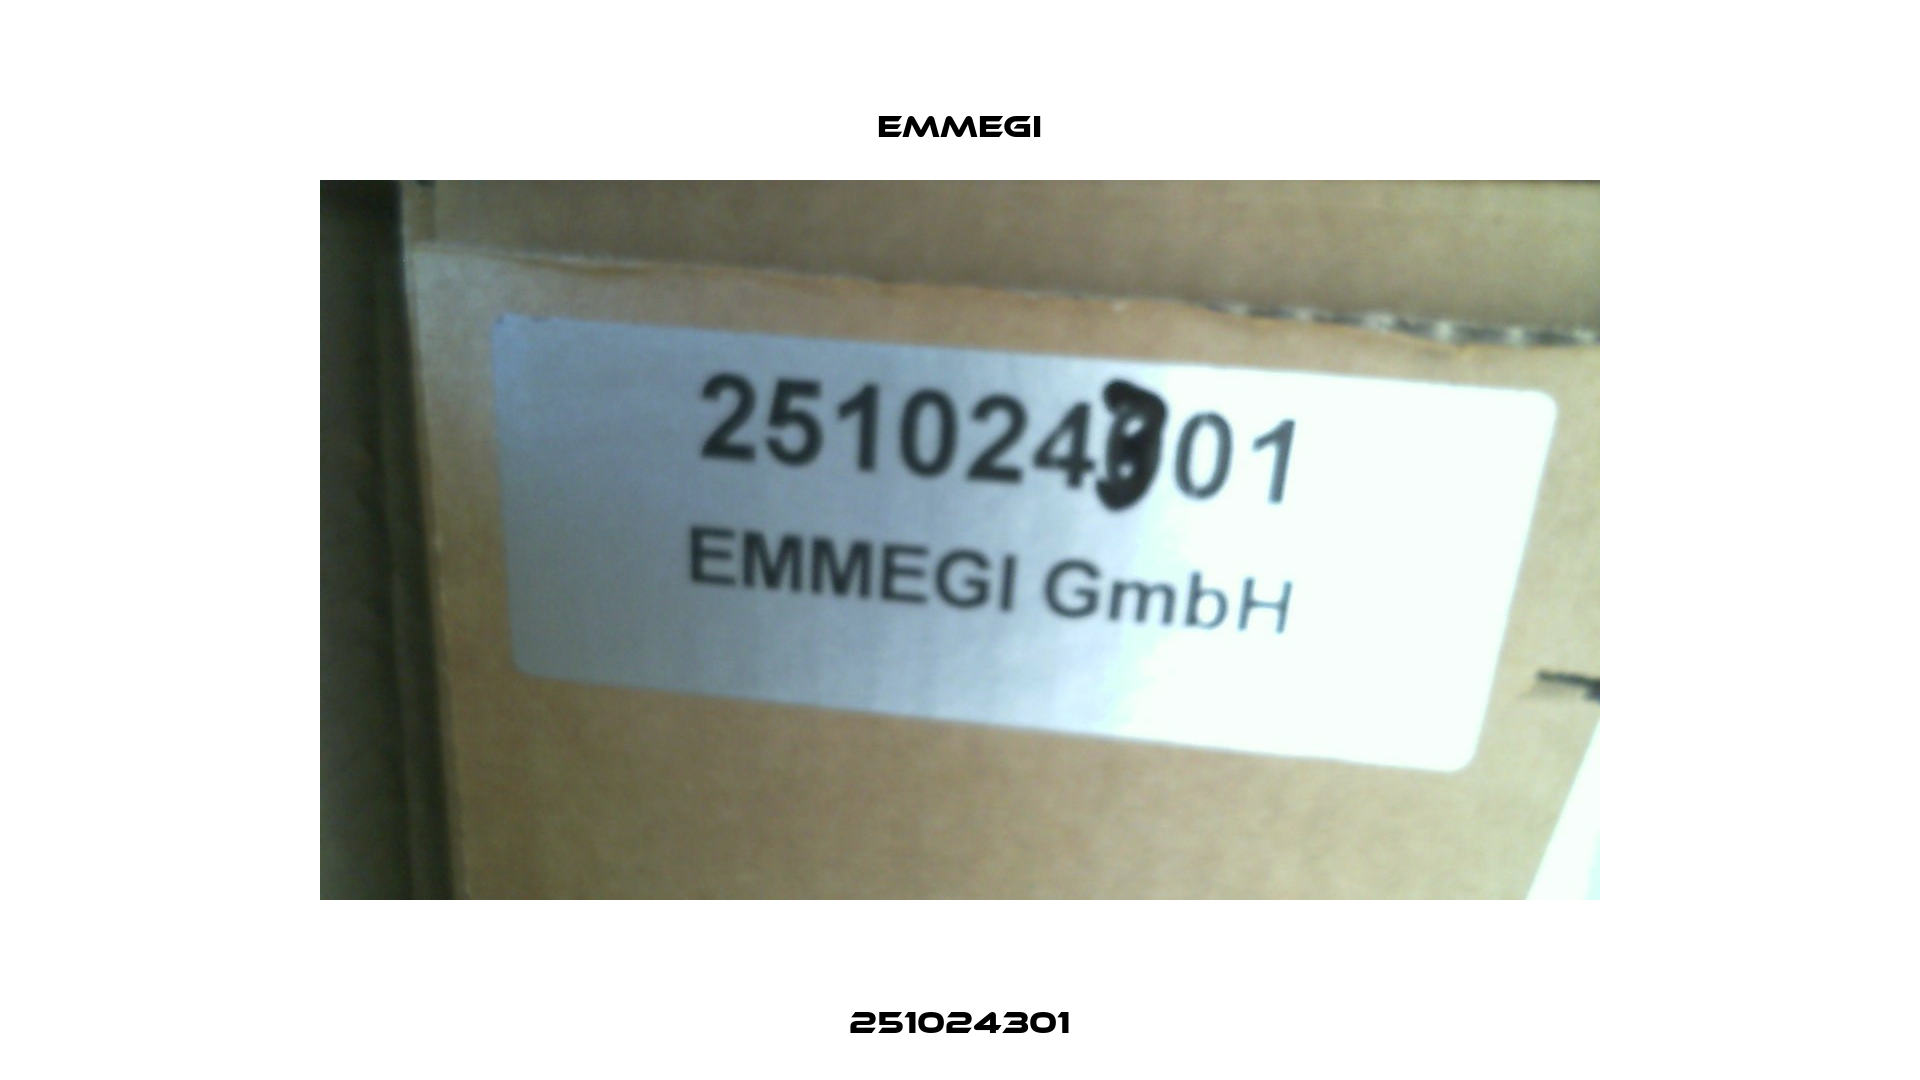 251024301 Emmegi